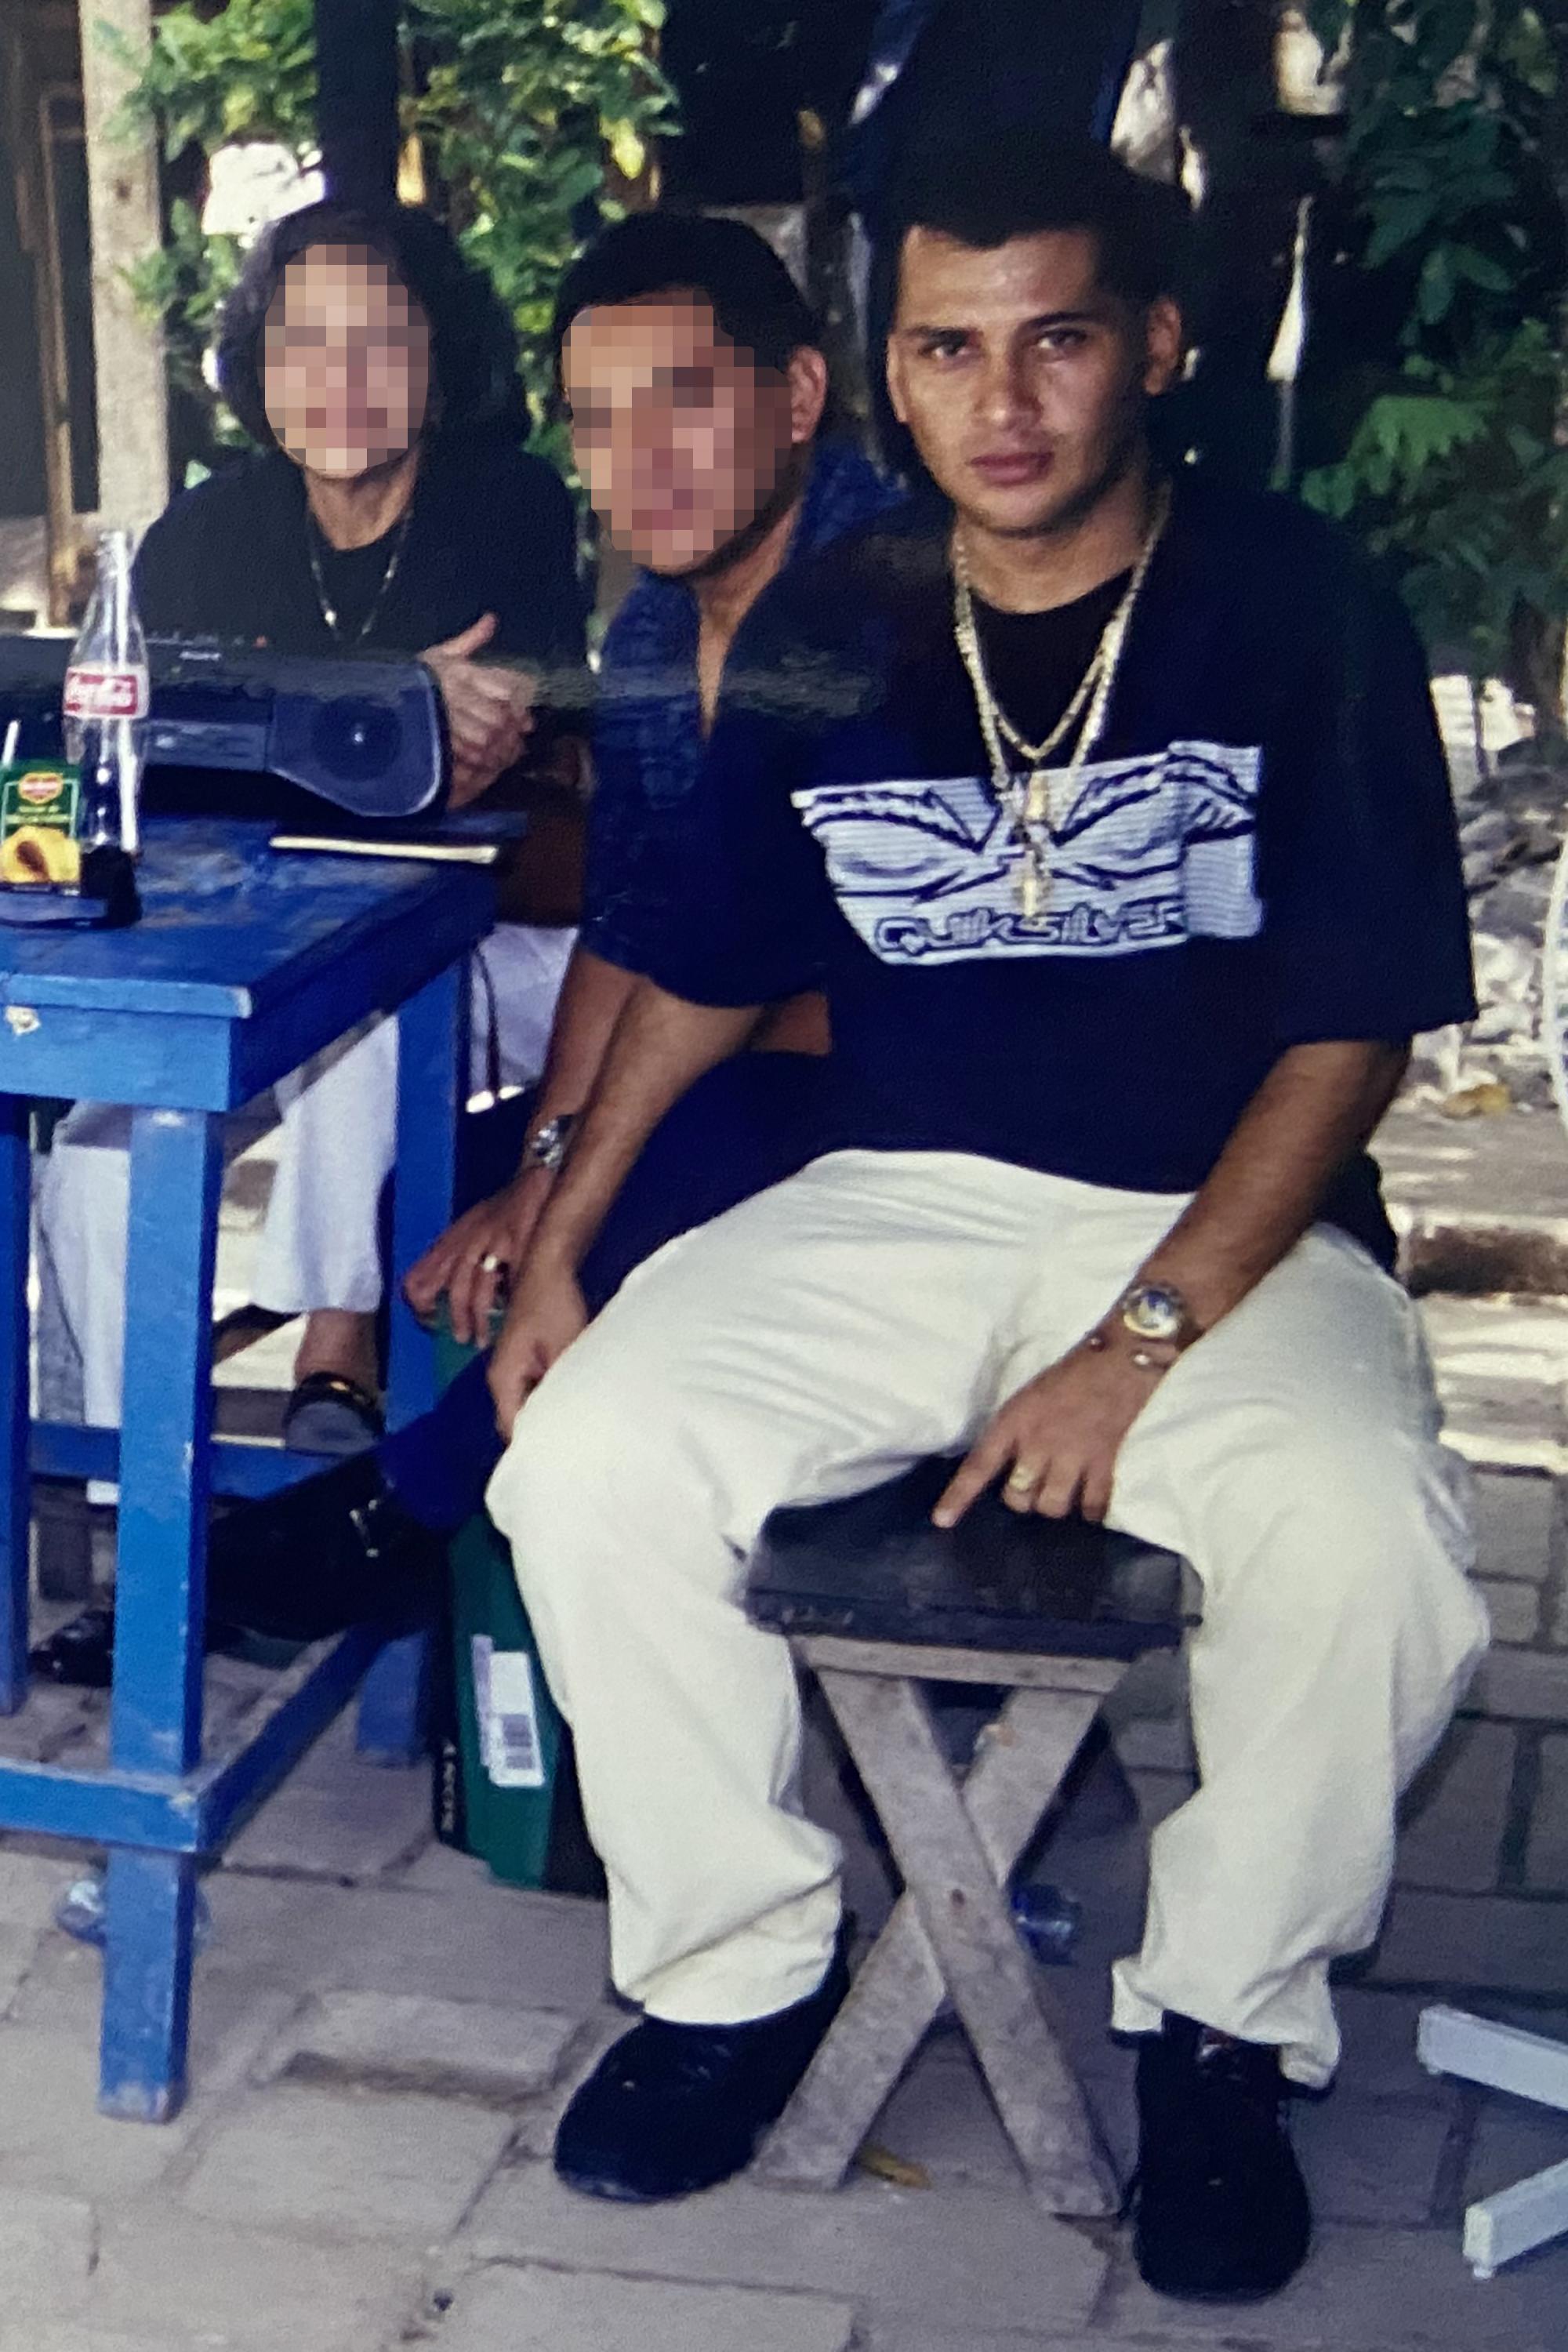 José Edgardo Bruno Ventura fue condenado a prisión en 1992 por el asalto a mano armada a una vivienda de Llano Verde, Ilopango. Durante su paso por prisión se convirtió en el líder absoluto de La Raza, la mayor pandilla carcelaria que ha existido en El Salvador. Fotografía tomada al interior de Mariona a finales de los 90.